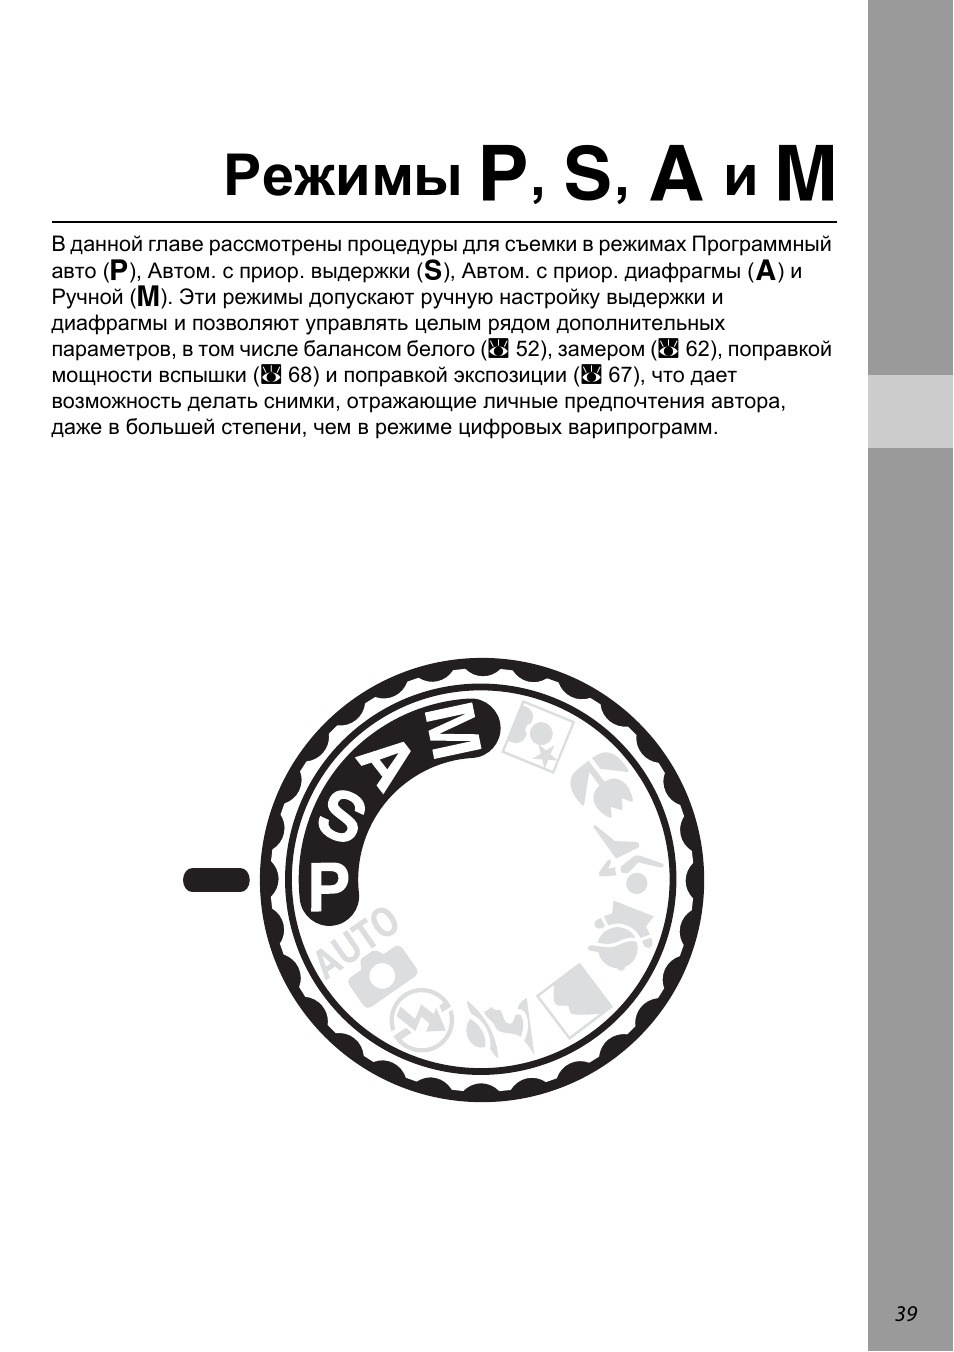 Режимы p, s, a и m, Режимы a , b , c и d | Инструкция по эксплуатации Nikon D60 | Страница 51 / 204